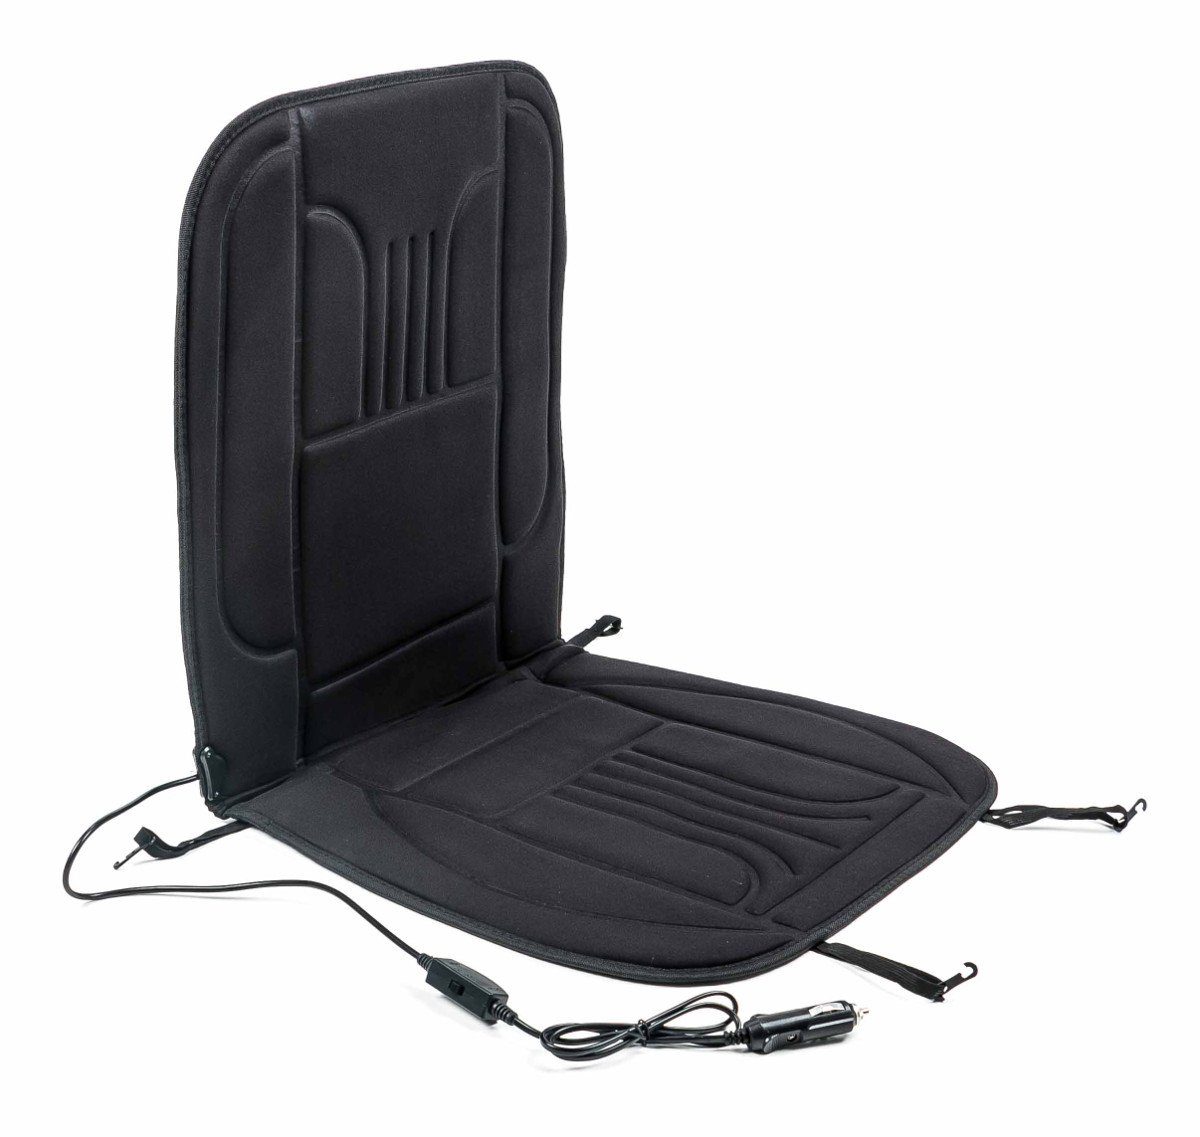 Modell 02 Sinbide Auto Heizkissen Heizbare Sitzauflage Sitzheizung Beheizbare Sitzauflage Sitzkissen 12V Temperatur Einstellbar Heizstufe mit Premium Zigarettenanzünderstecker 2 STK 